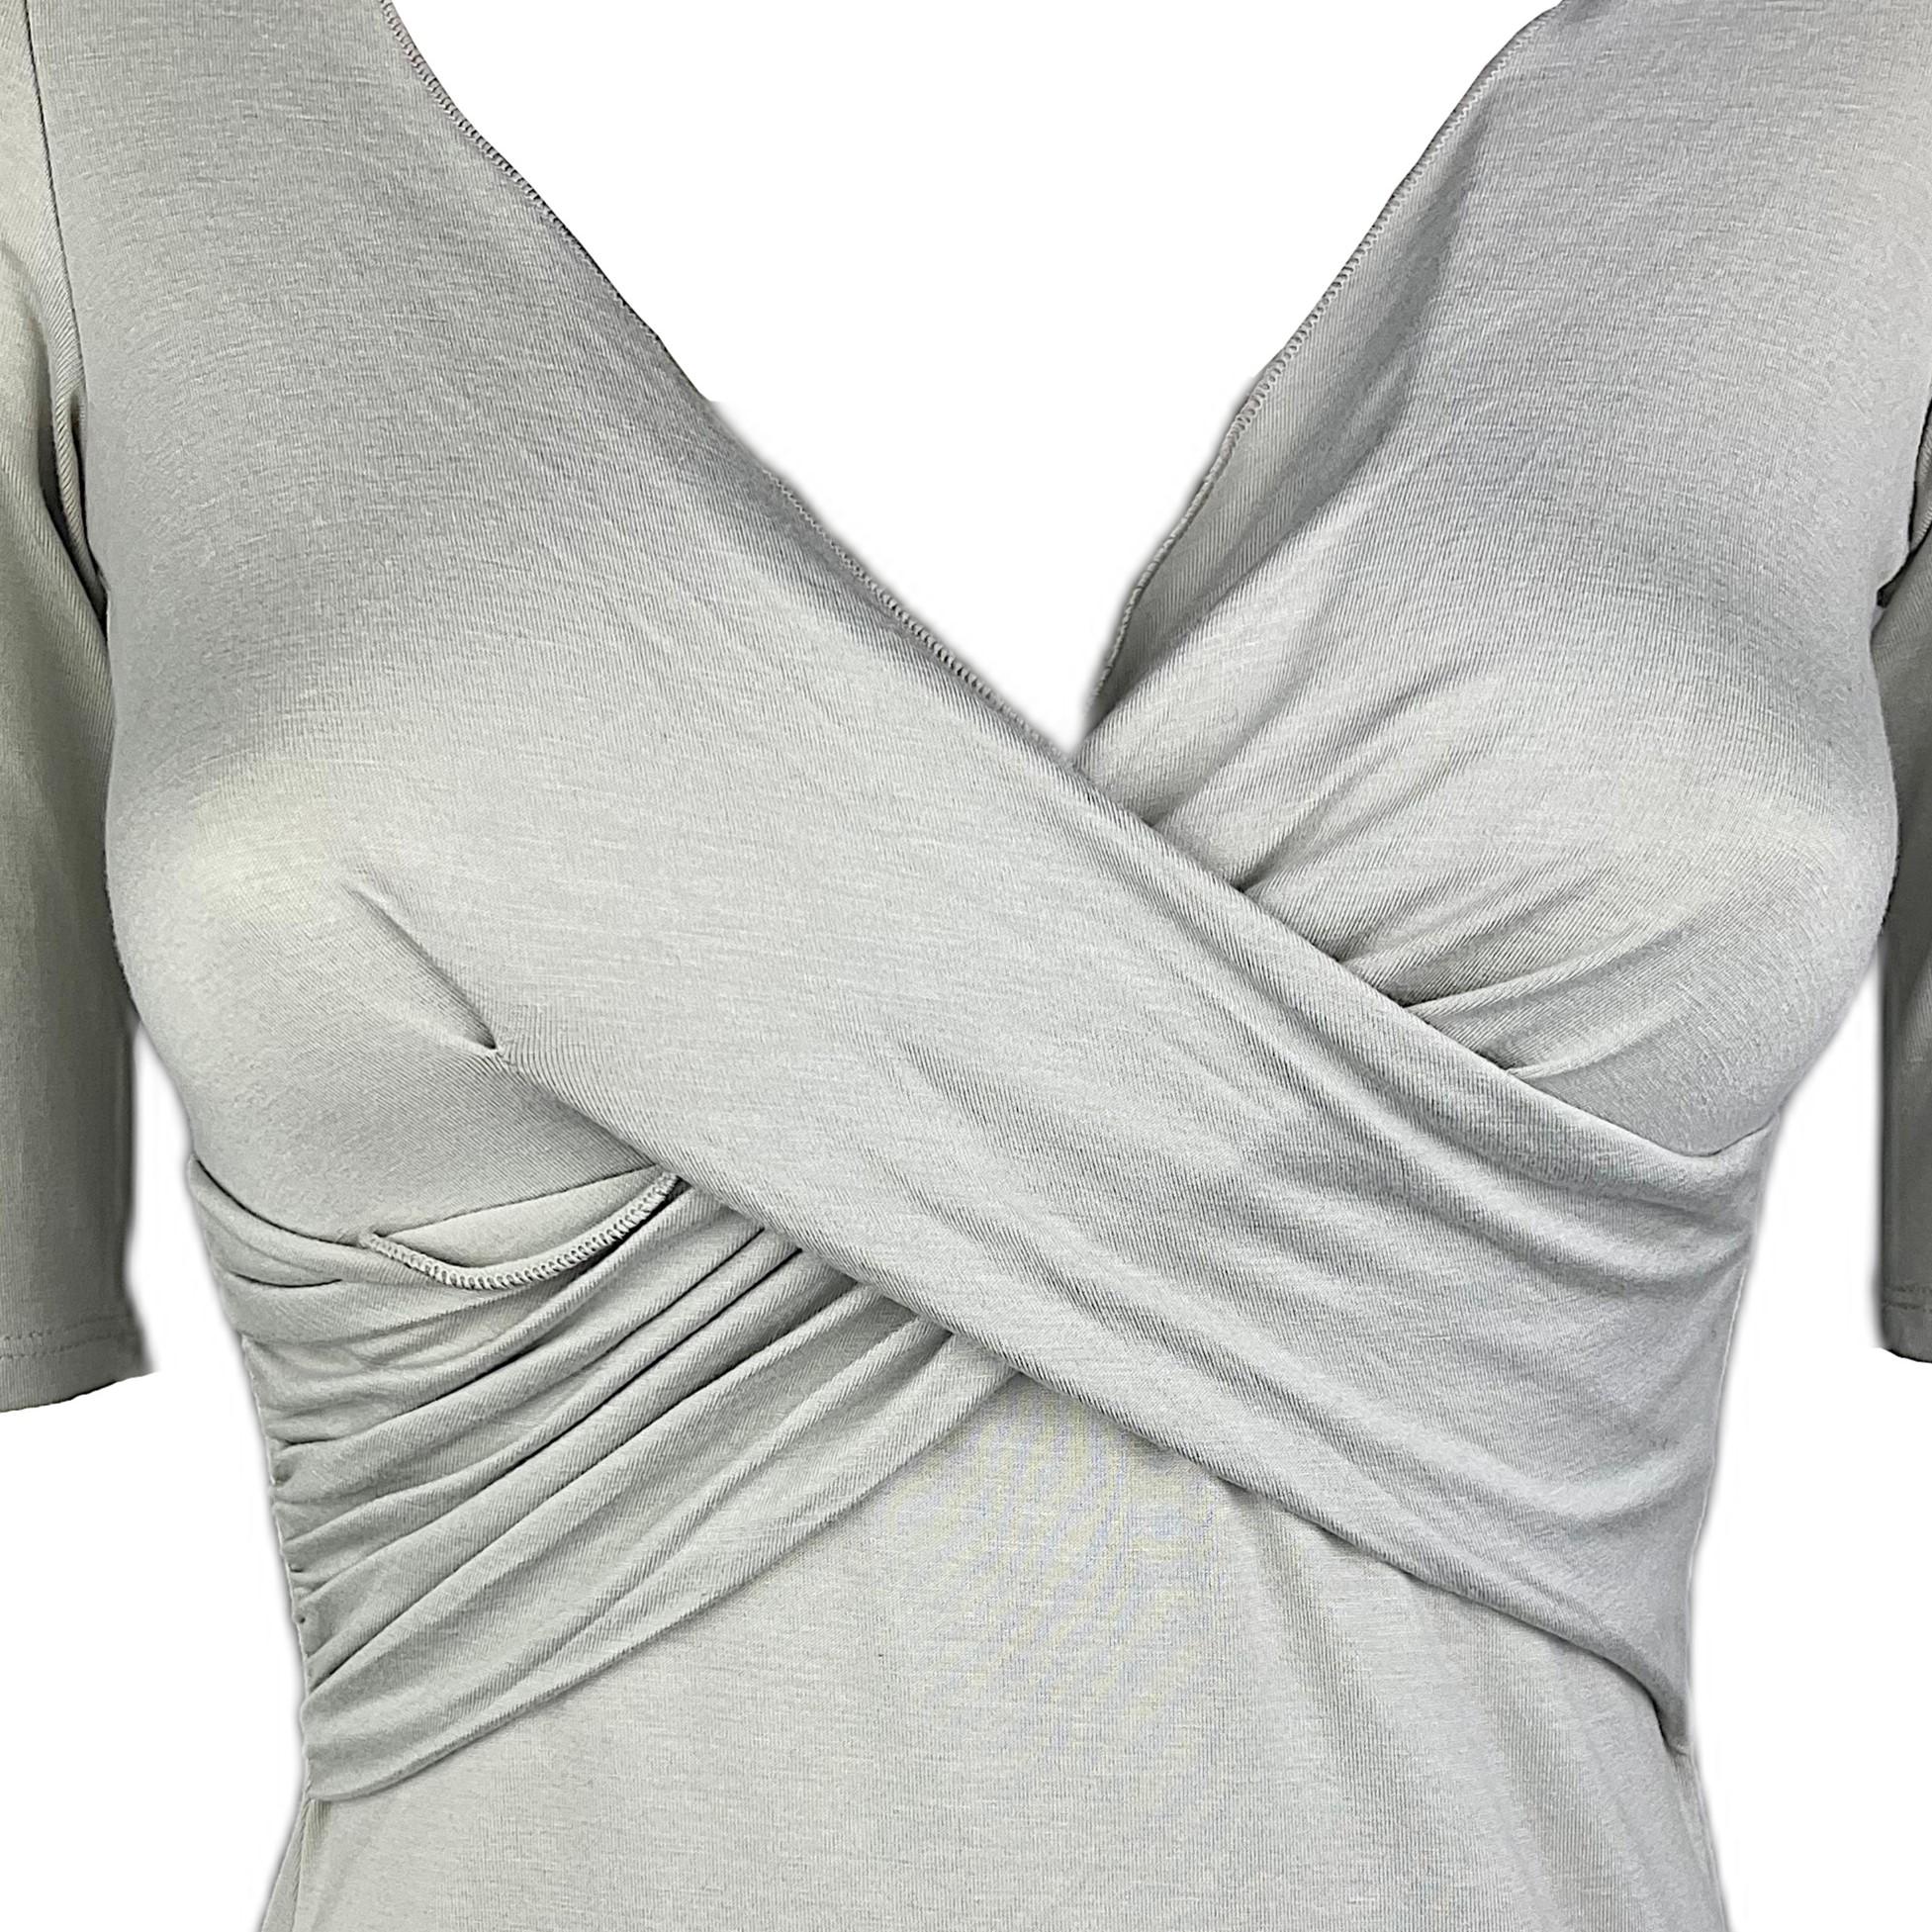 ARMANI COLLEZIONI – Light Grey Half-Sleeves Top with V-neckline  Size 2US 34EU In Good Condition For Sale In Cuggiono, MI